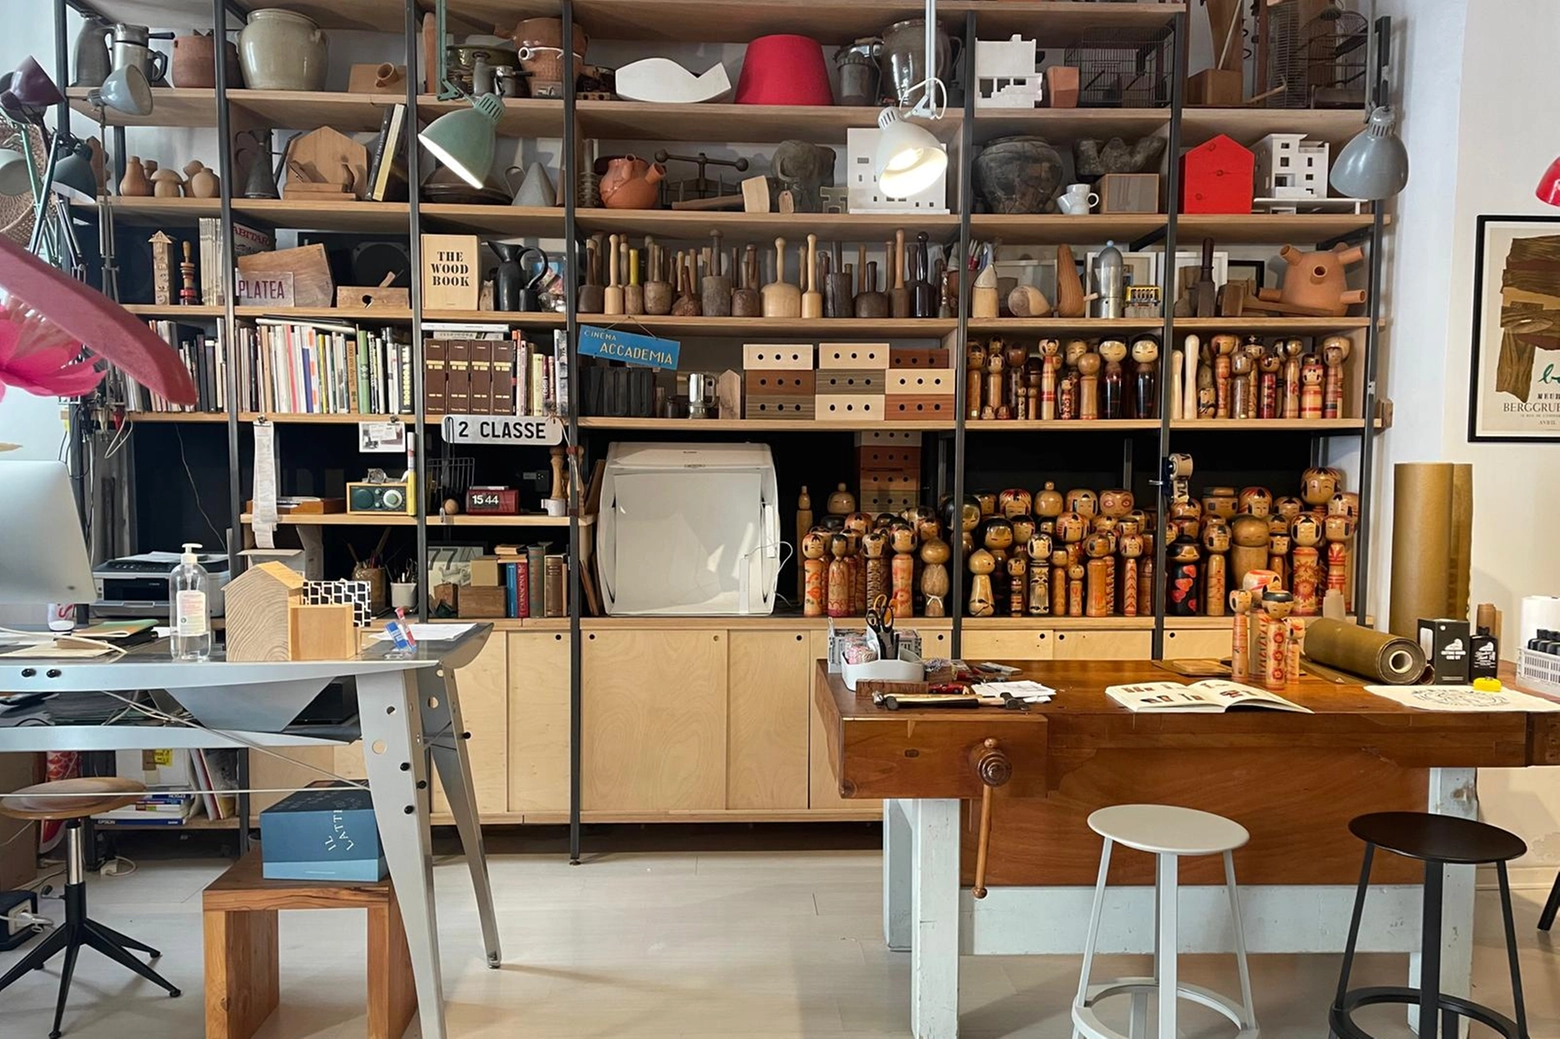 L'interno di Vud, studio bottega, laboratorio di design con falegnameria a vista in via Diaz 15 a Trieste (foto di Monica Guerci)